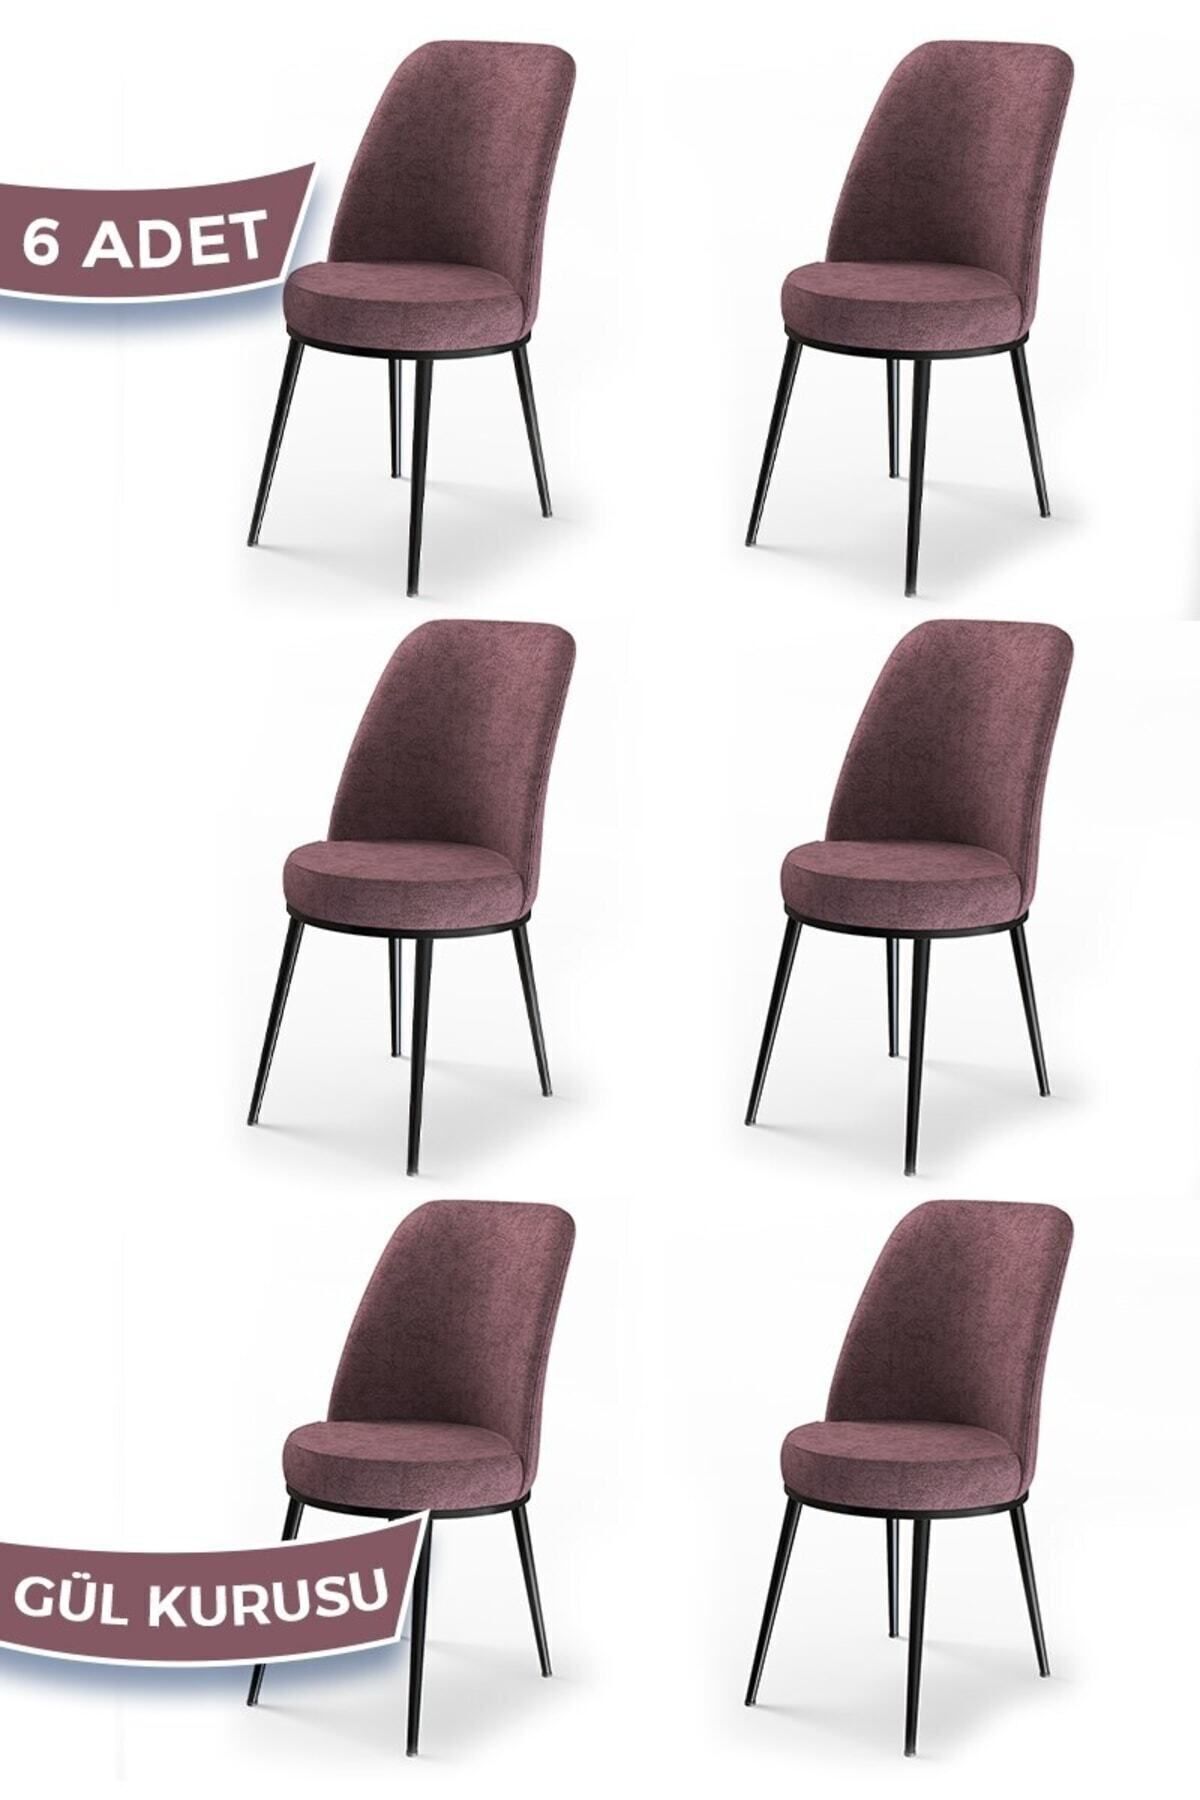 Canisa Concept Dexa Serisi, Üst Kalite Yemek Odası Sandalyesi, Metal Siyah Iskeletli, 6 Adet Gülkurusu Sandalye